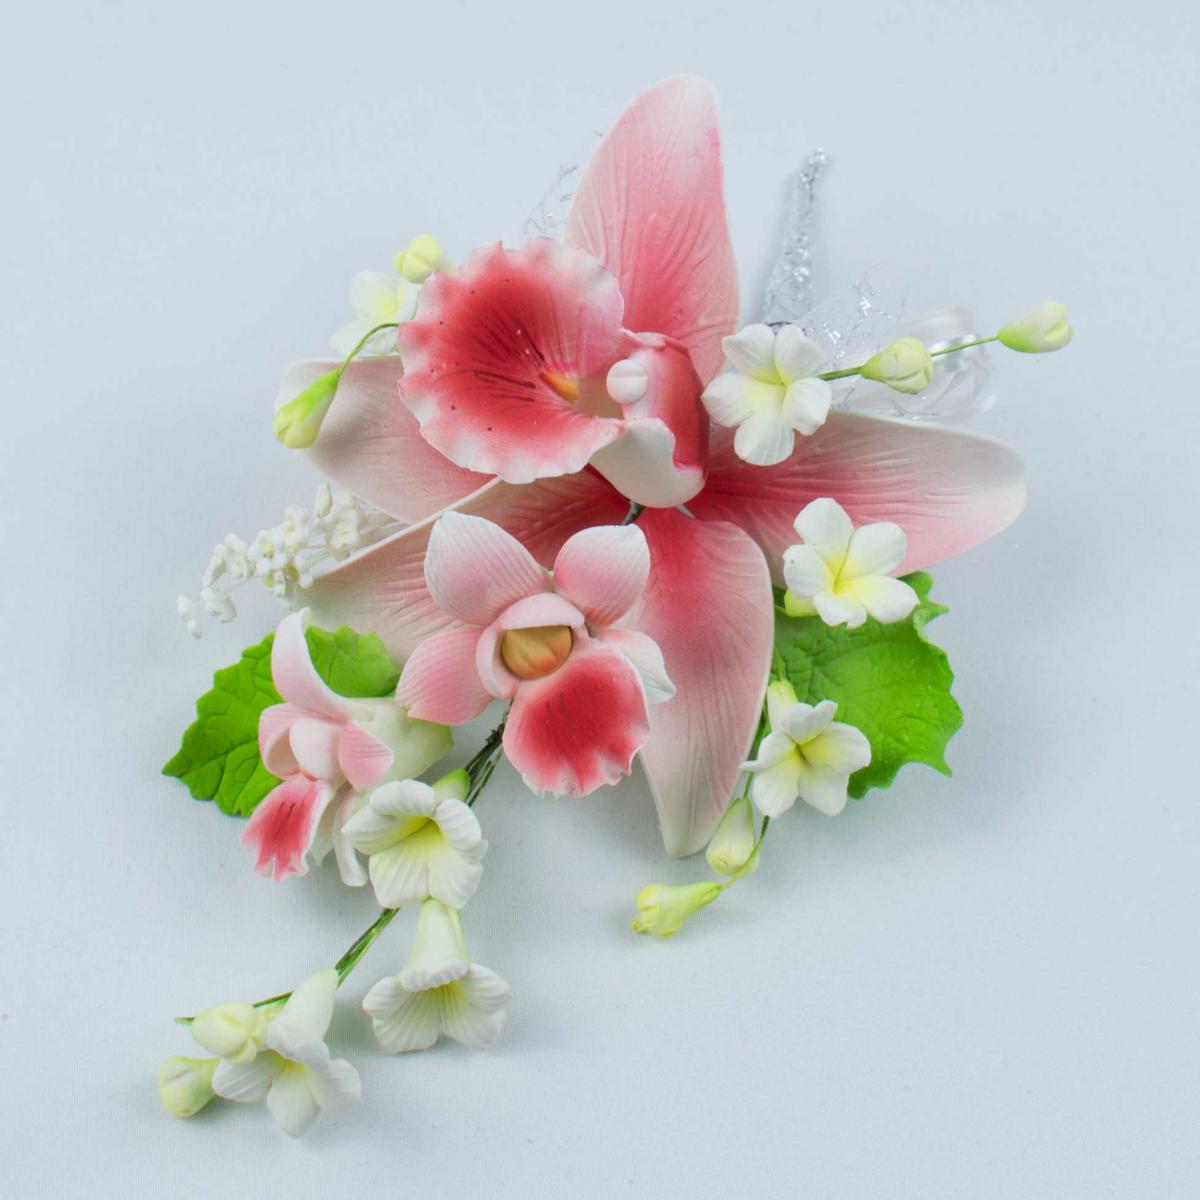 Торт Праздничный № 546, декор цветы орхидеи из сахарной мастики